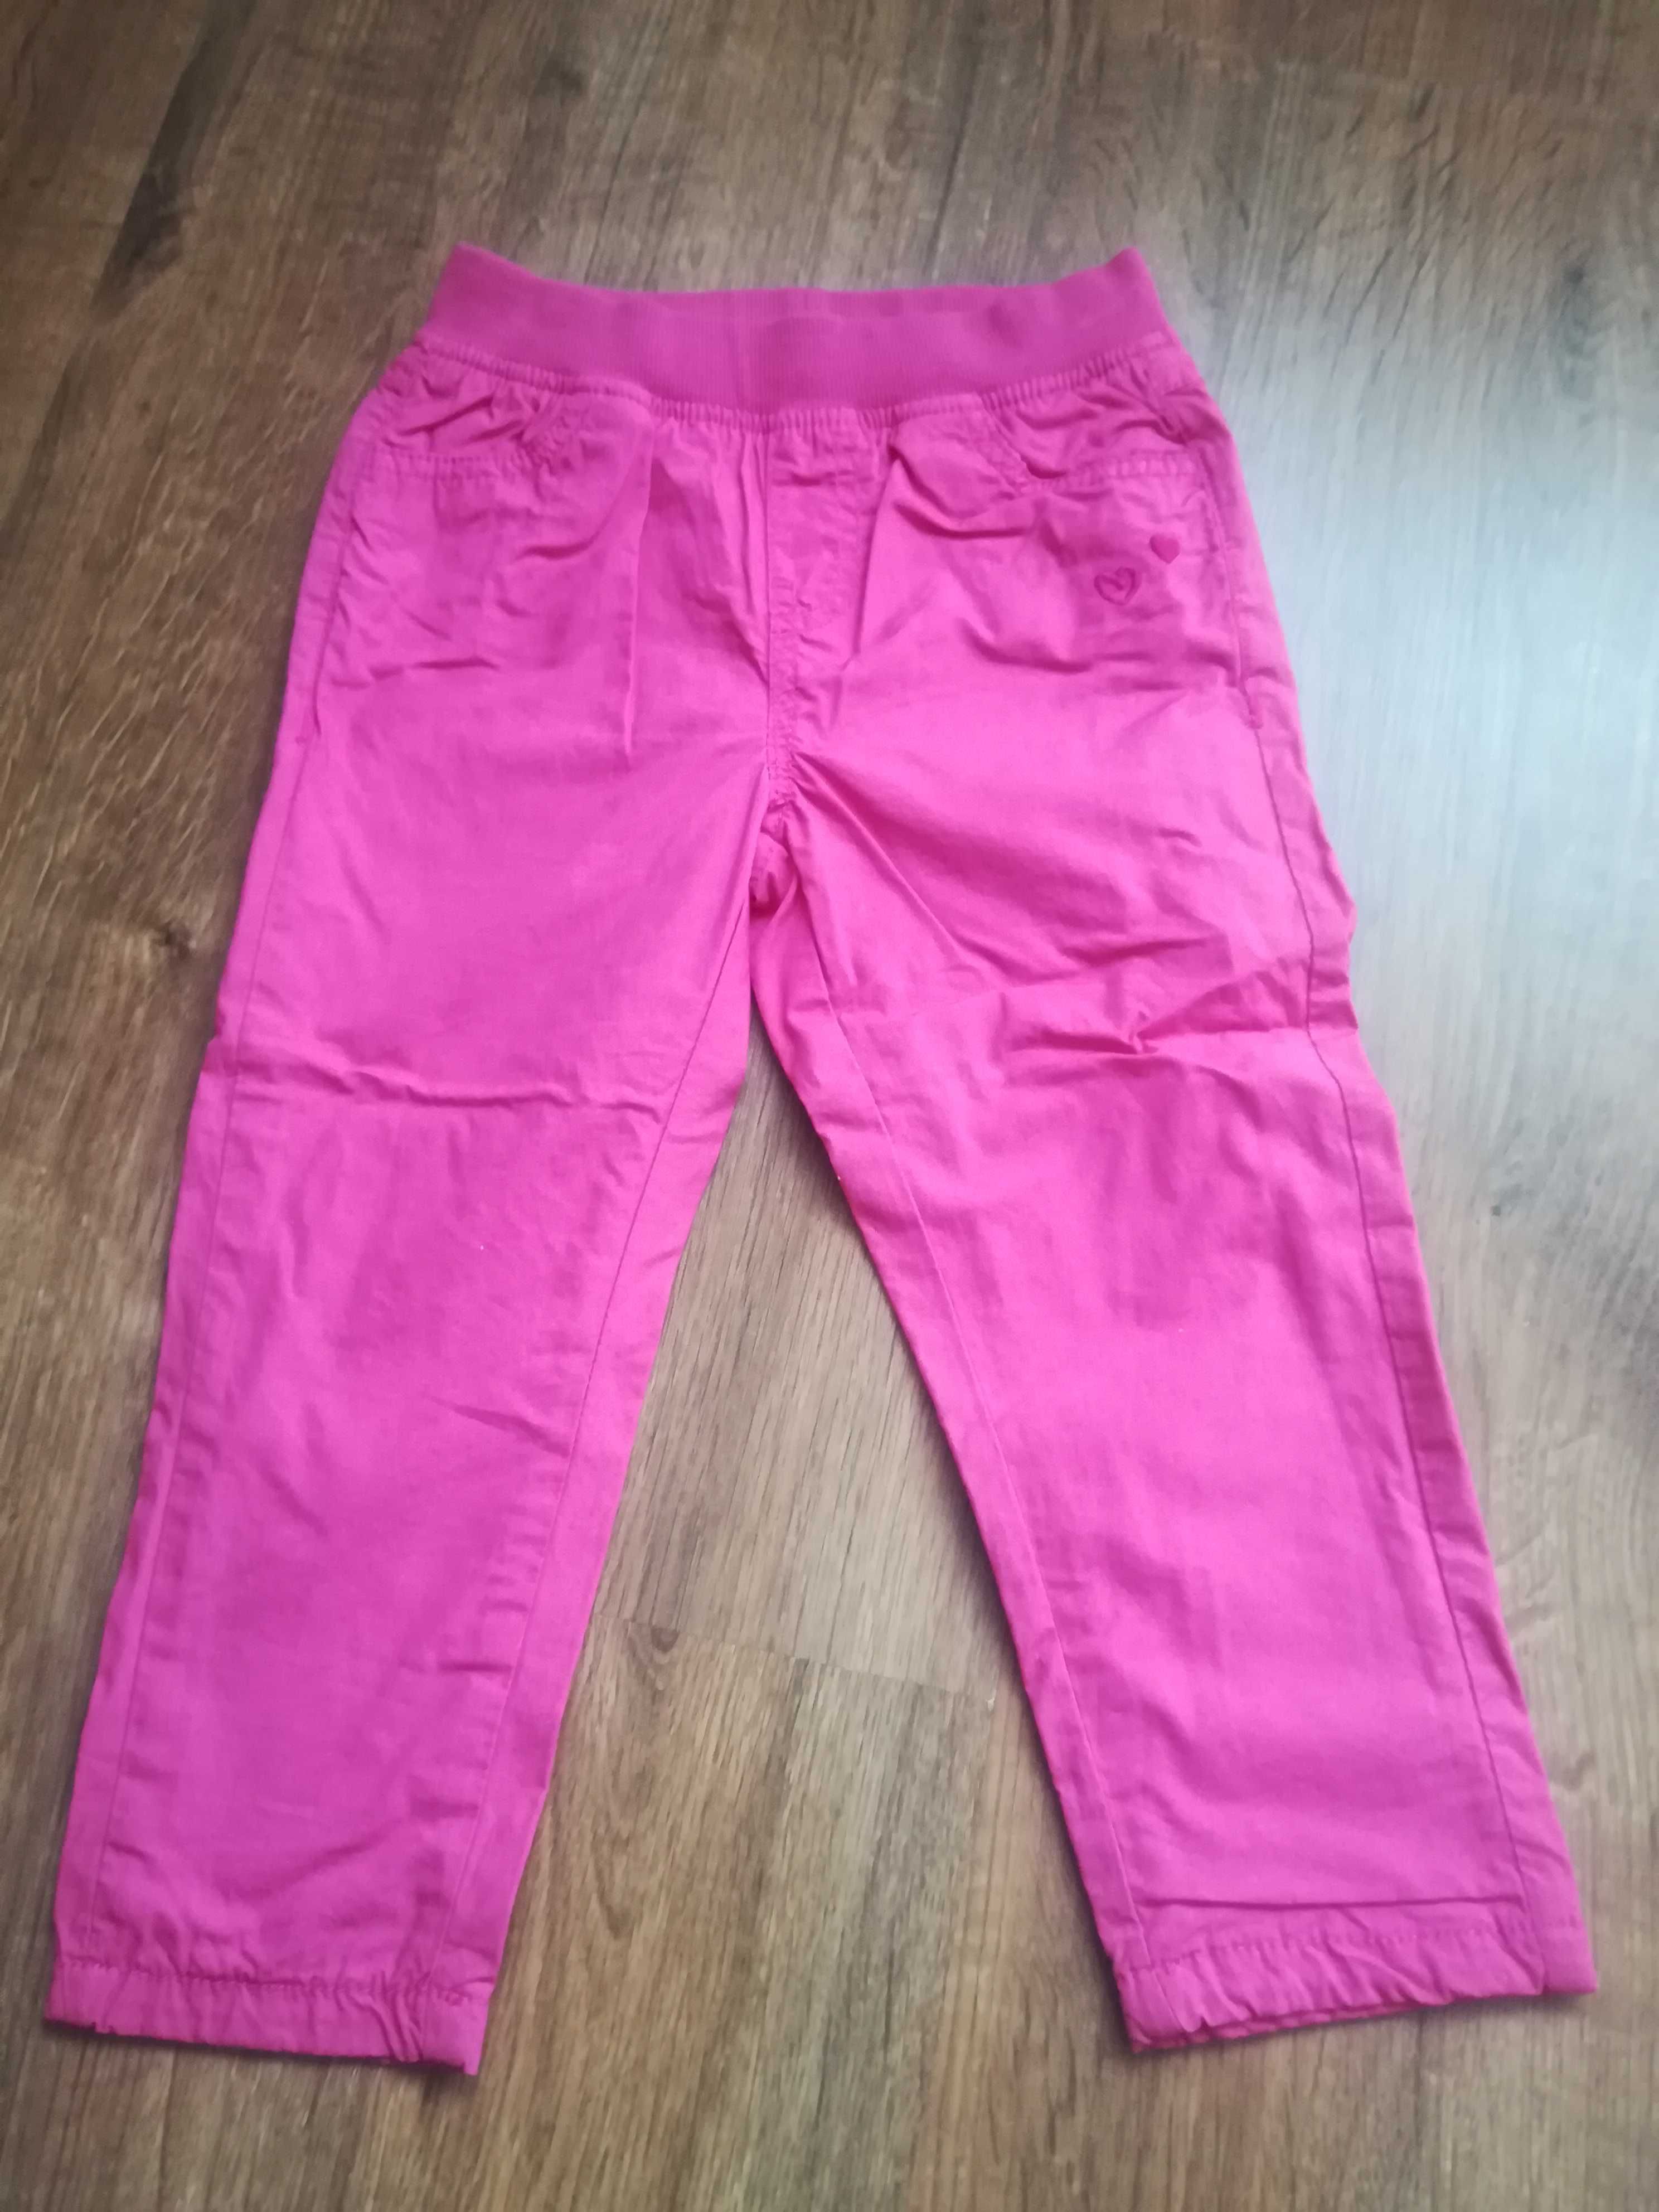 Spodnie różowe dla dziewczynki